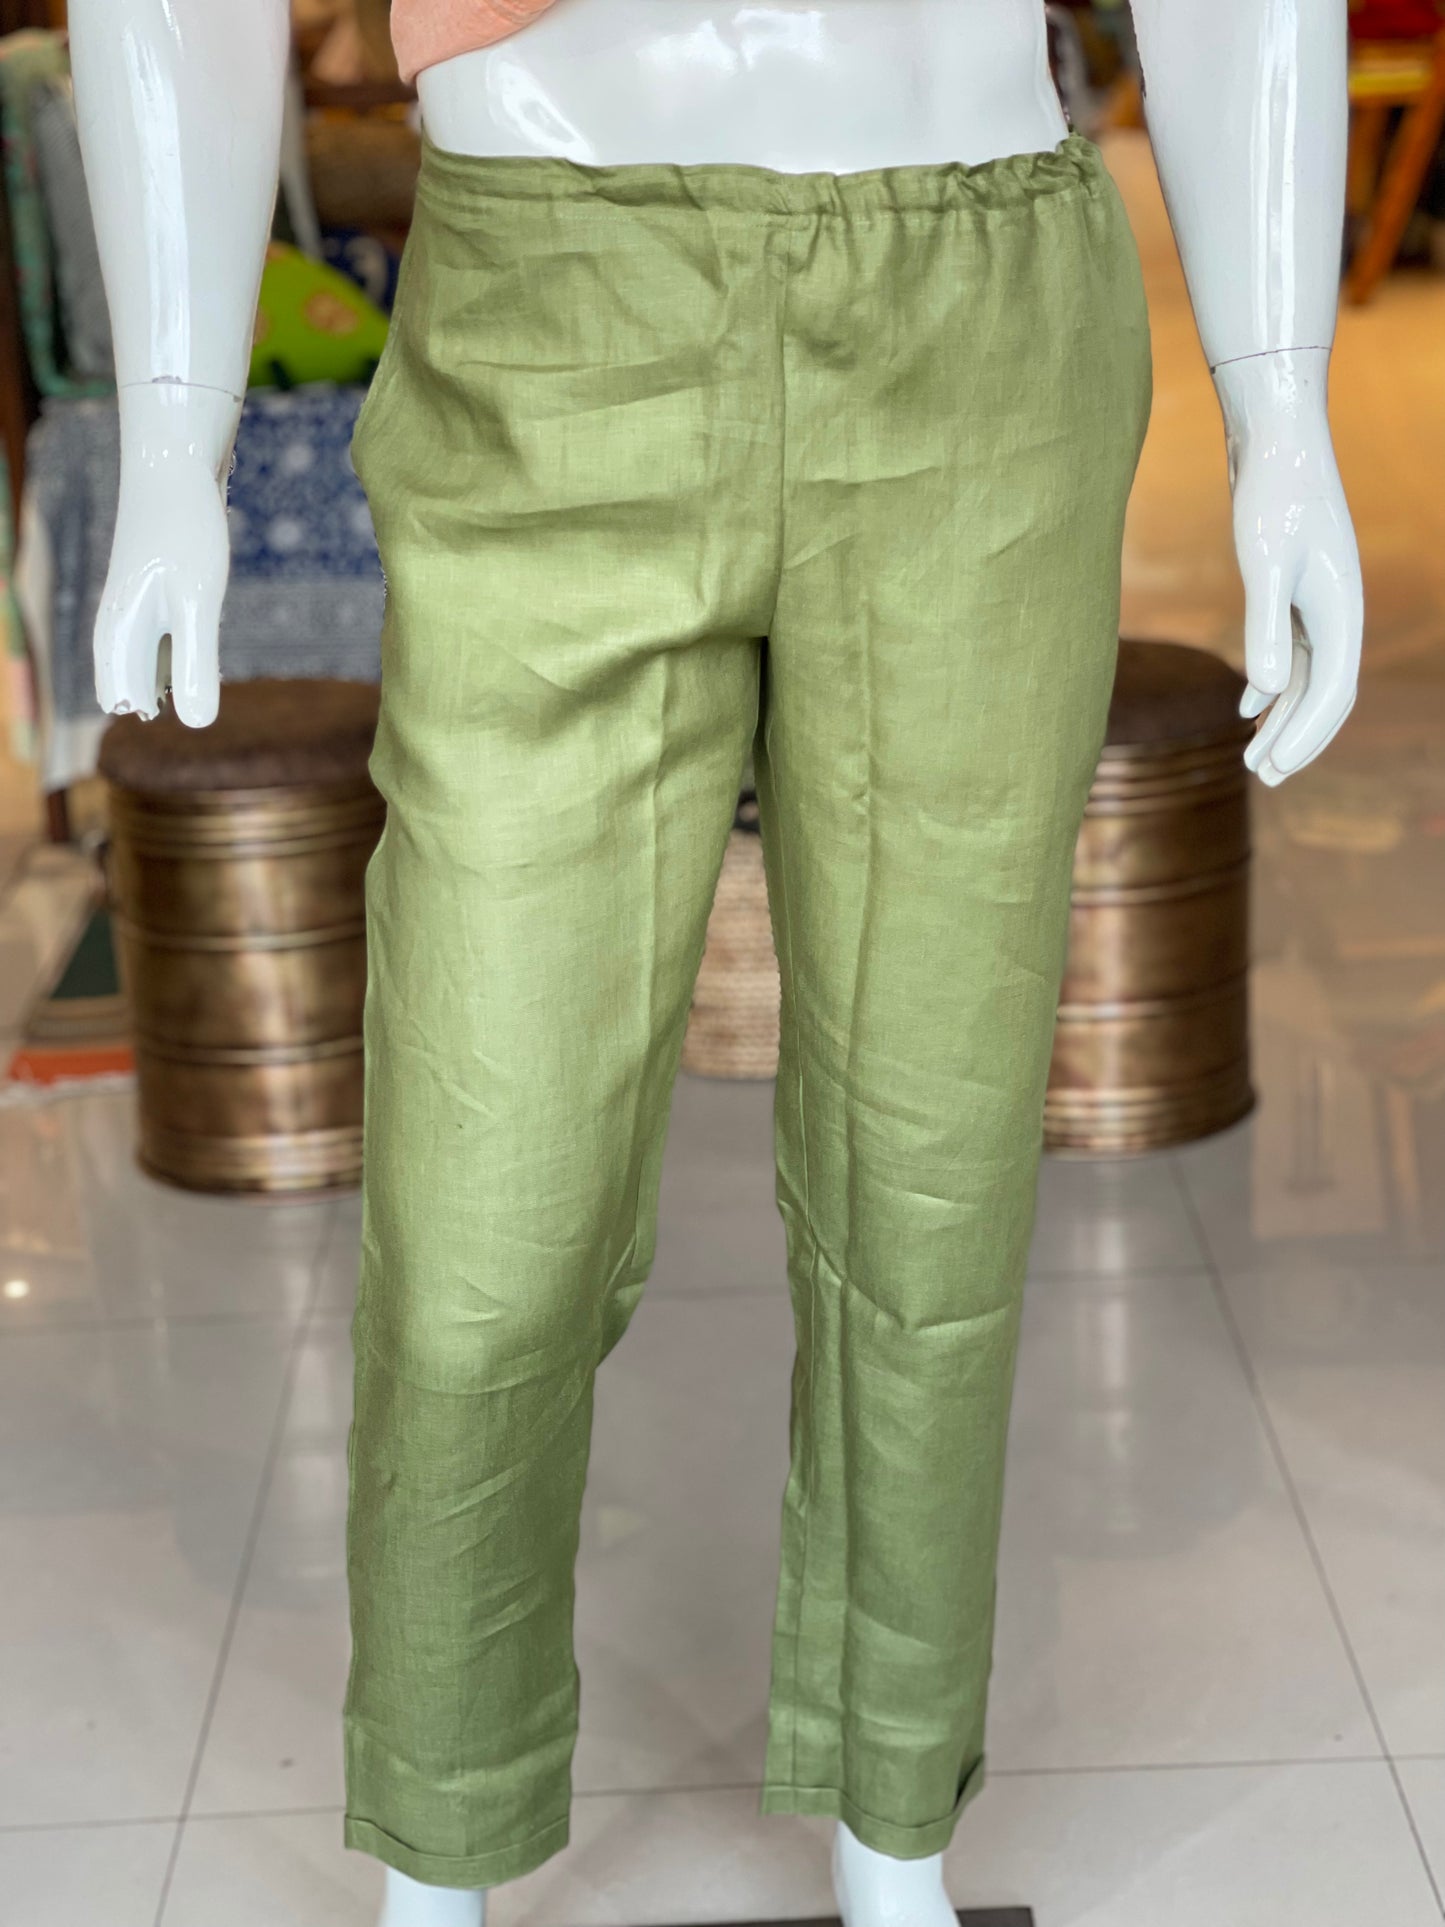 Olive green Men’s comfy natural hemp pants